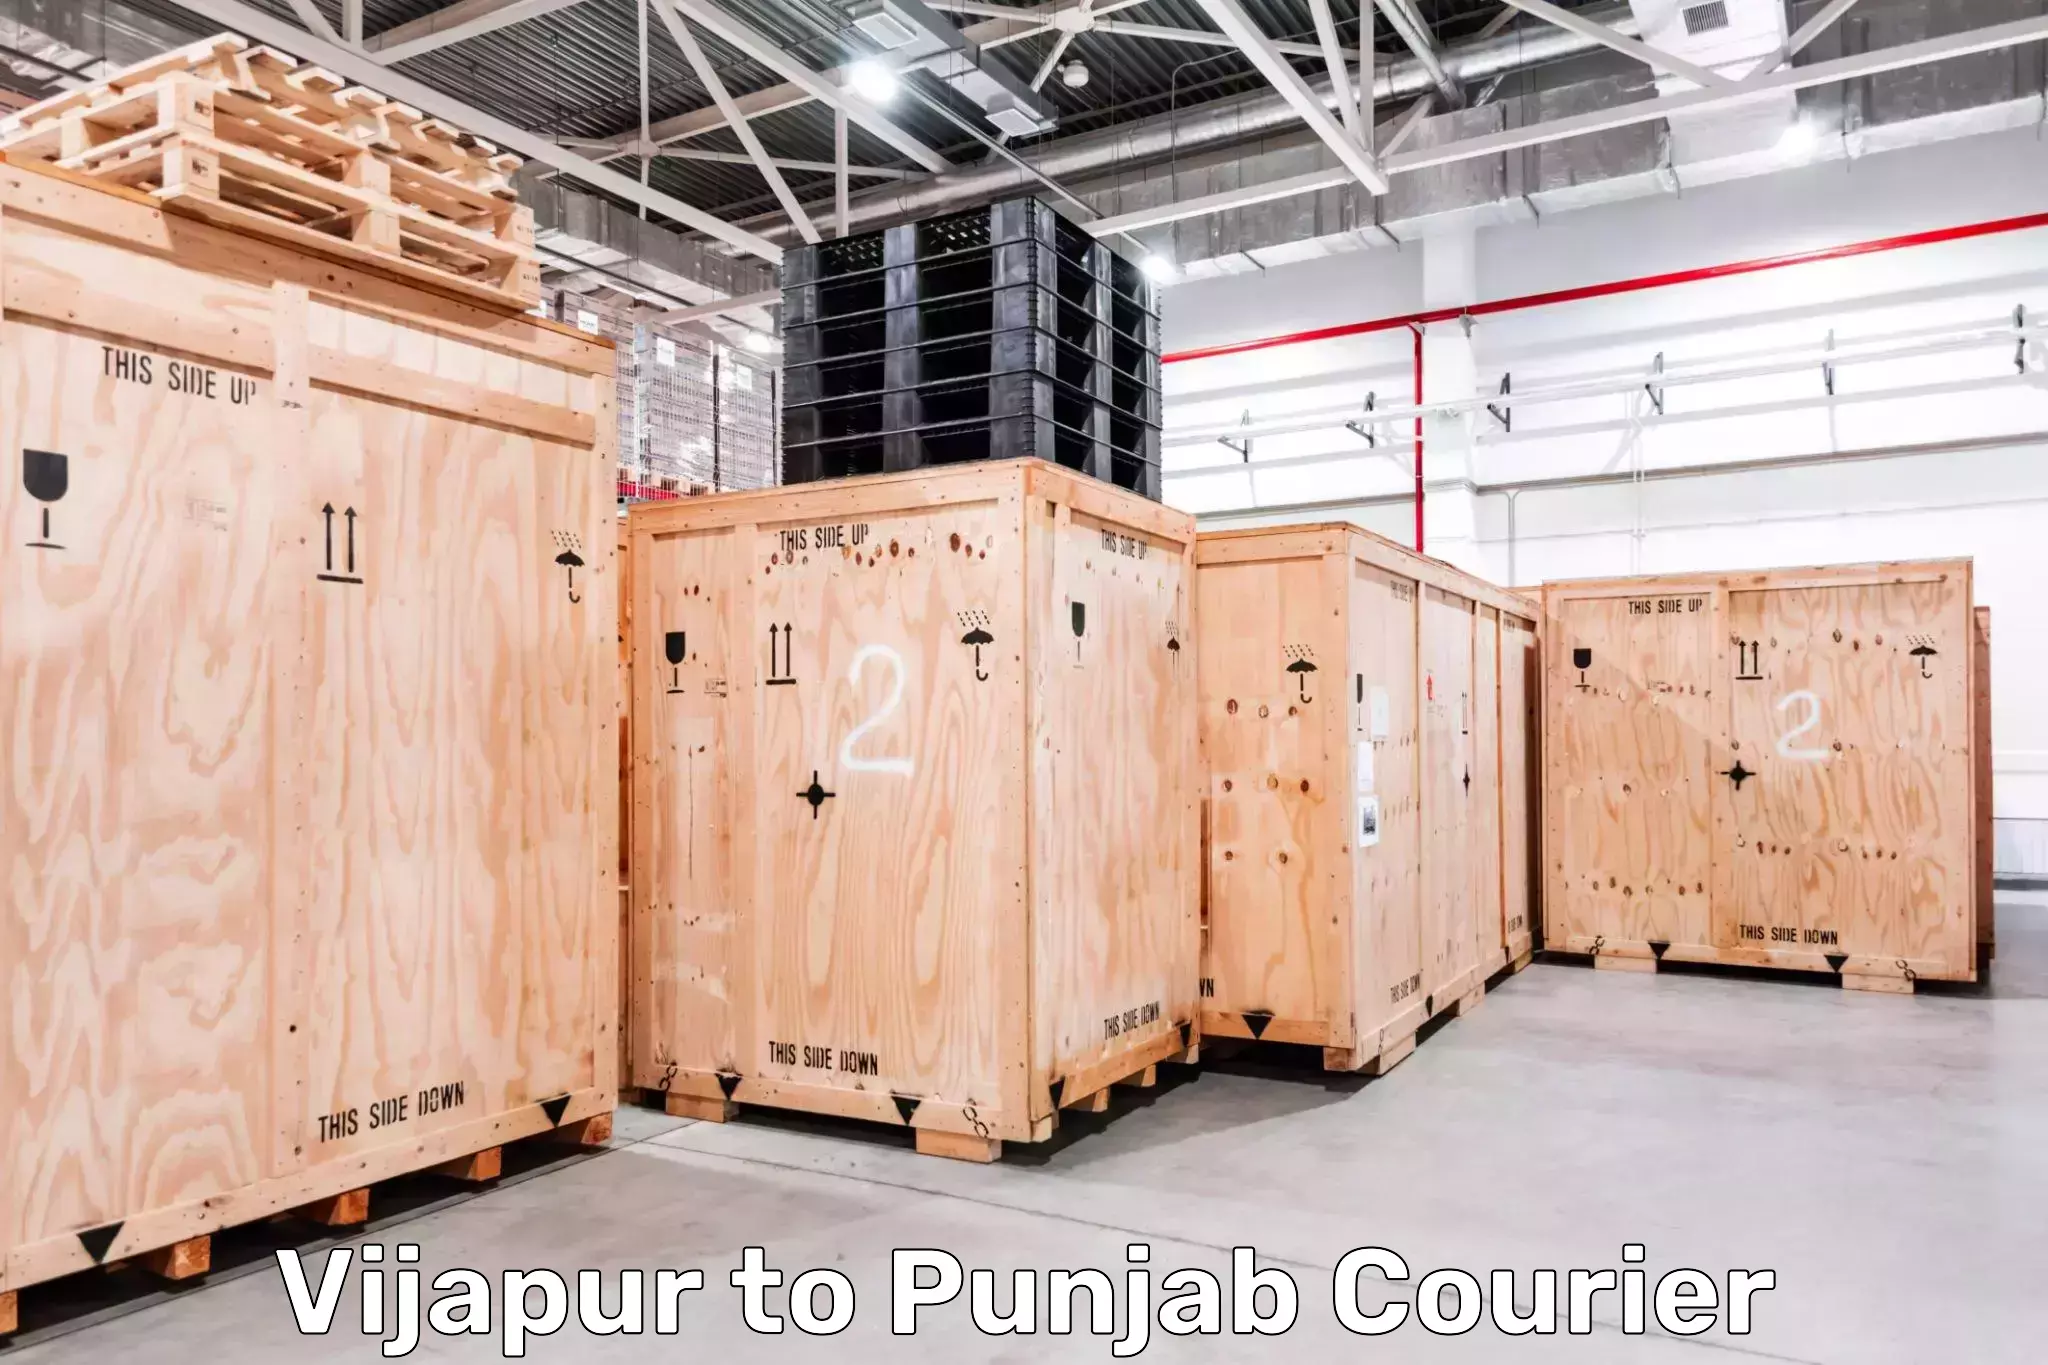 Digital courier platforms Vijapur to Punjab